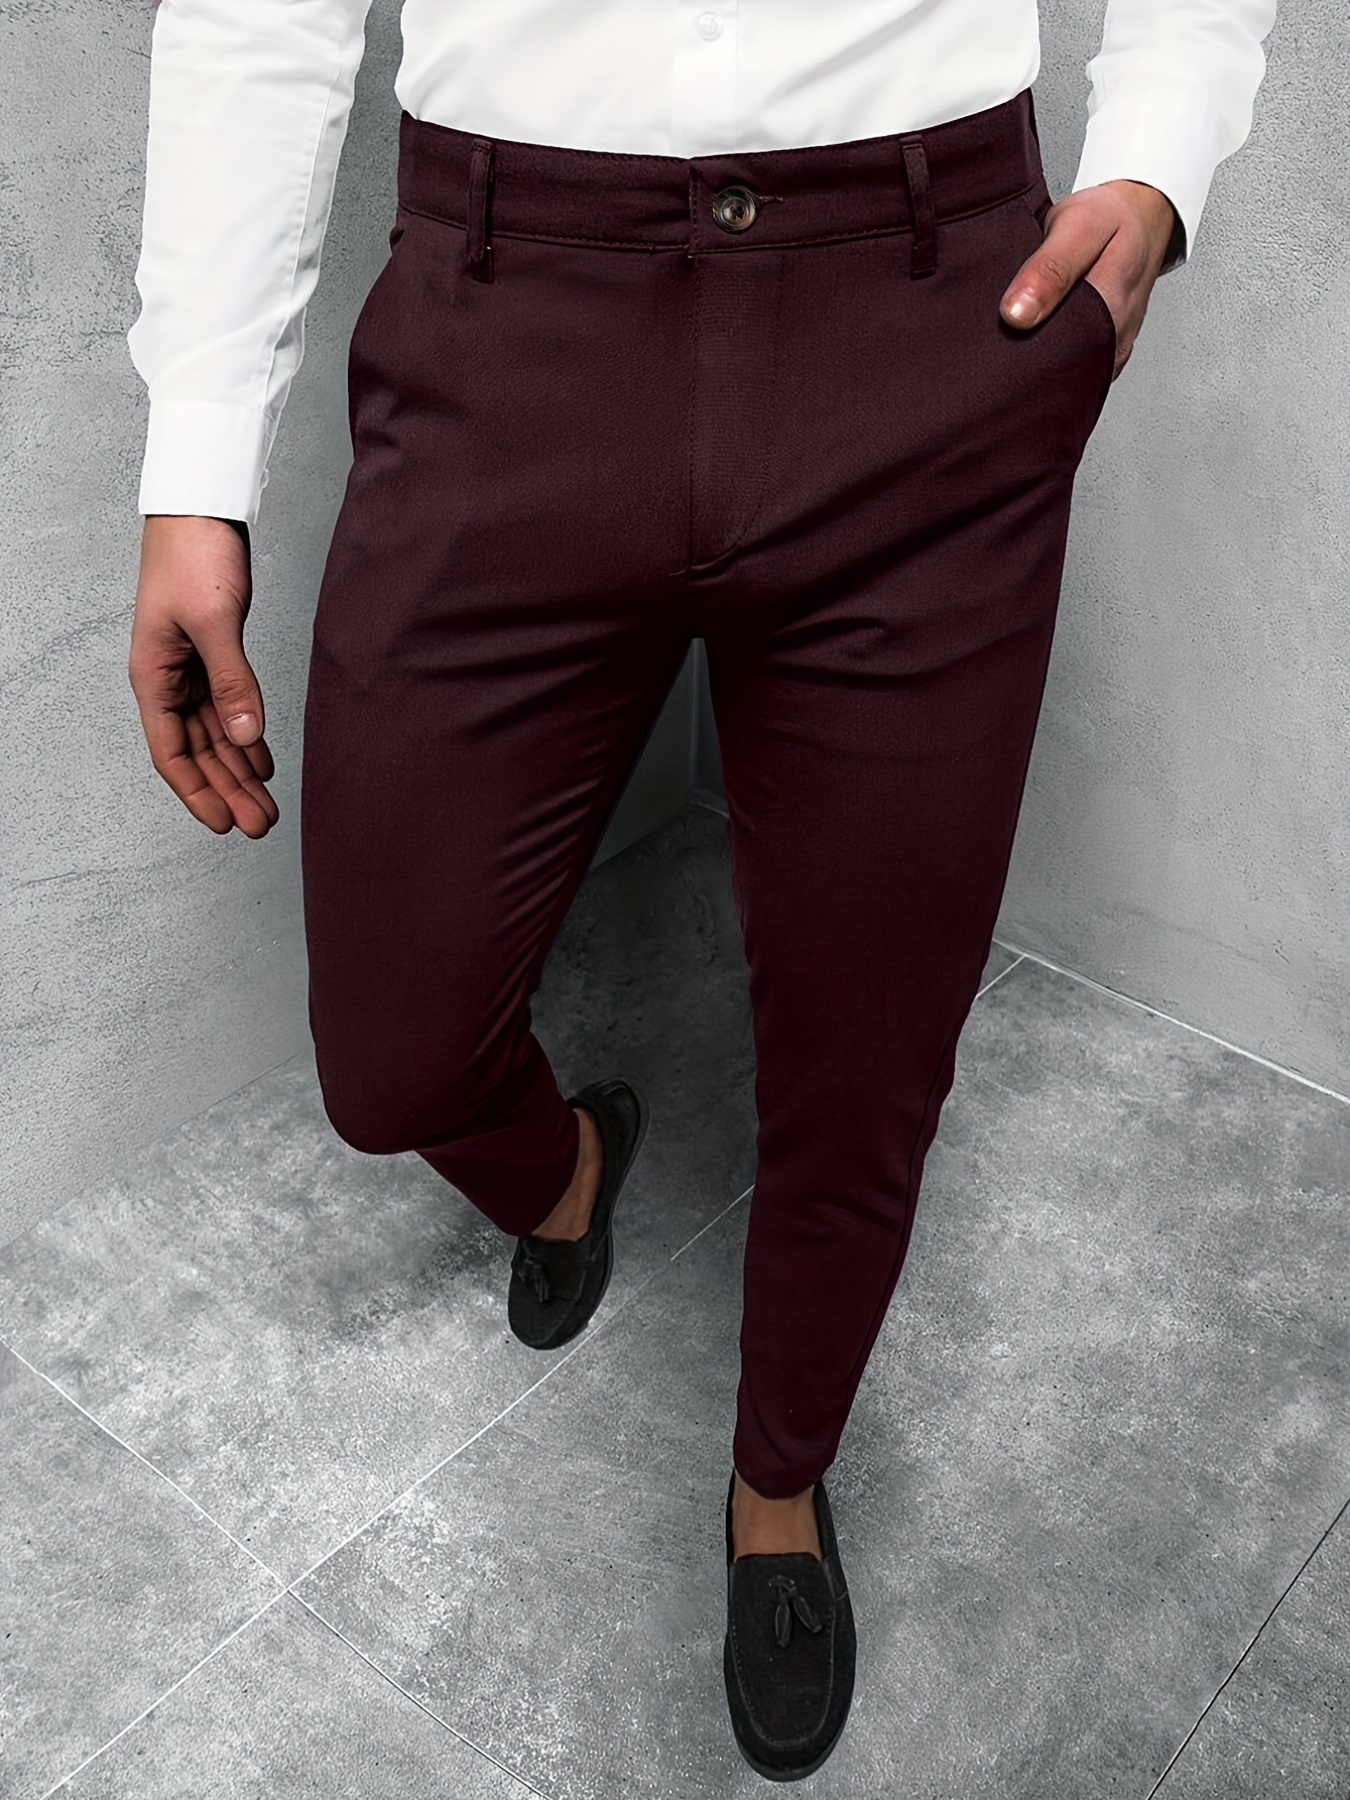 Spandex High Stretch Dress Pants Men's Semi formal Classic - Temu Canada